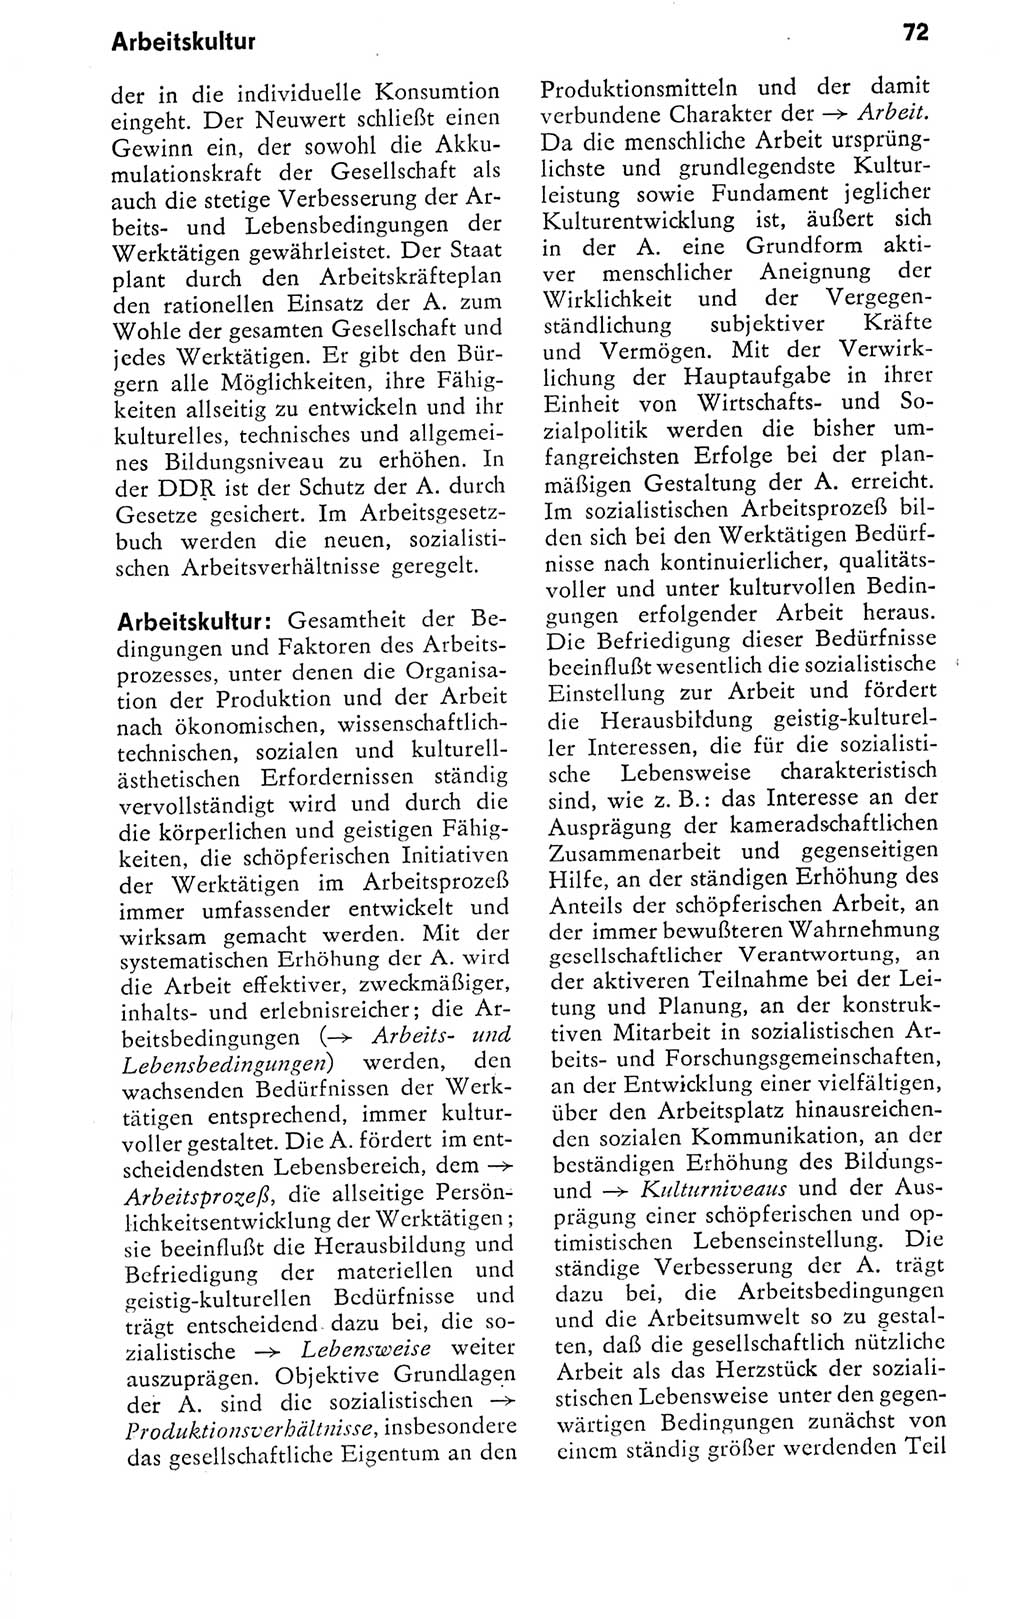 Kleines politisches Wörterbuch [Deutsche Demokratische Republik (DDR)] 1978, Seite 72 (Kl. pol. Wb. DDR 1978, S. 72)